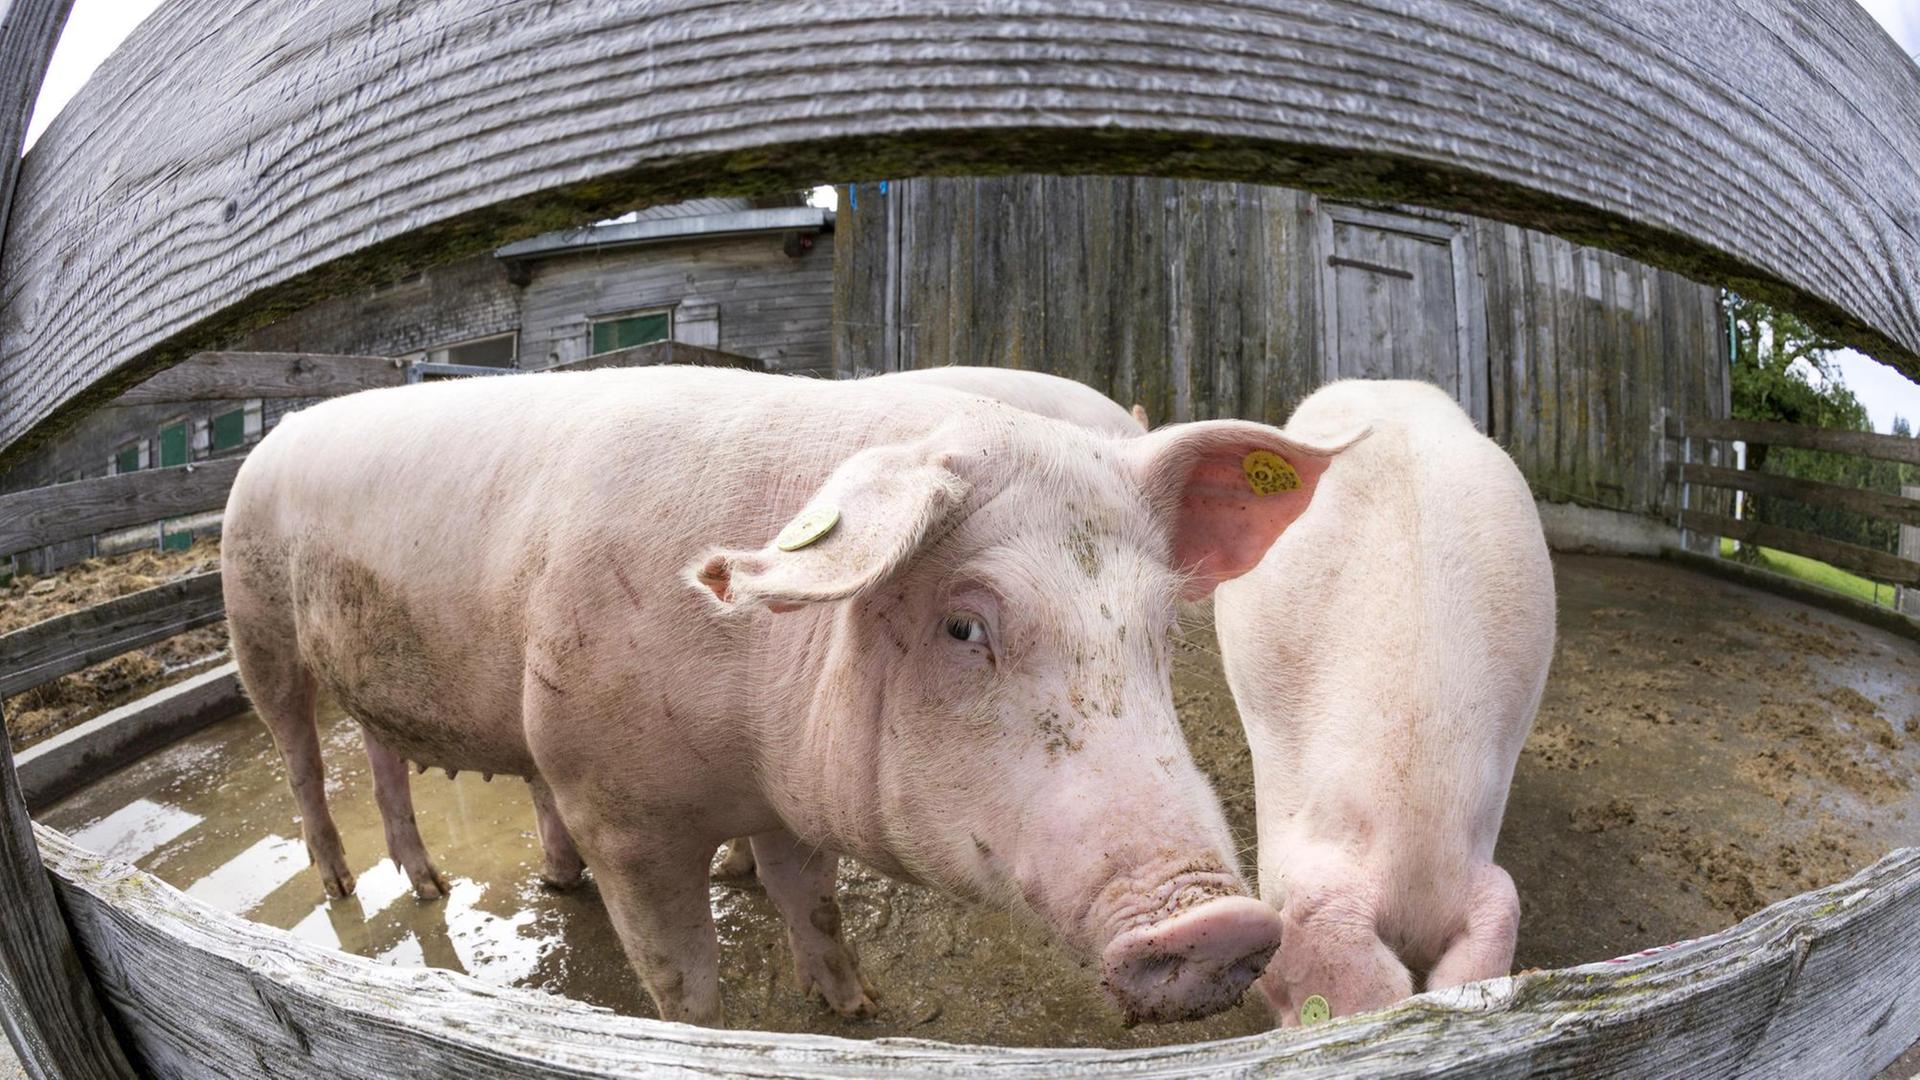 Schweine in einem Biomastbetrieb in Vorarlberg, Österreich. Zwei Schweine sind in einem Draußen-Gehege untergebracht. Eines schaut durch den Zaun.